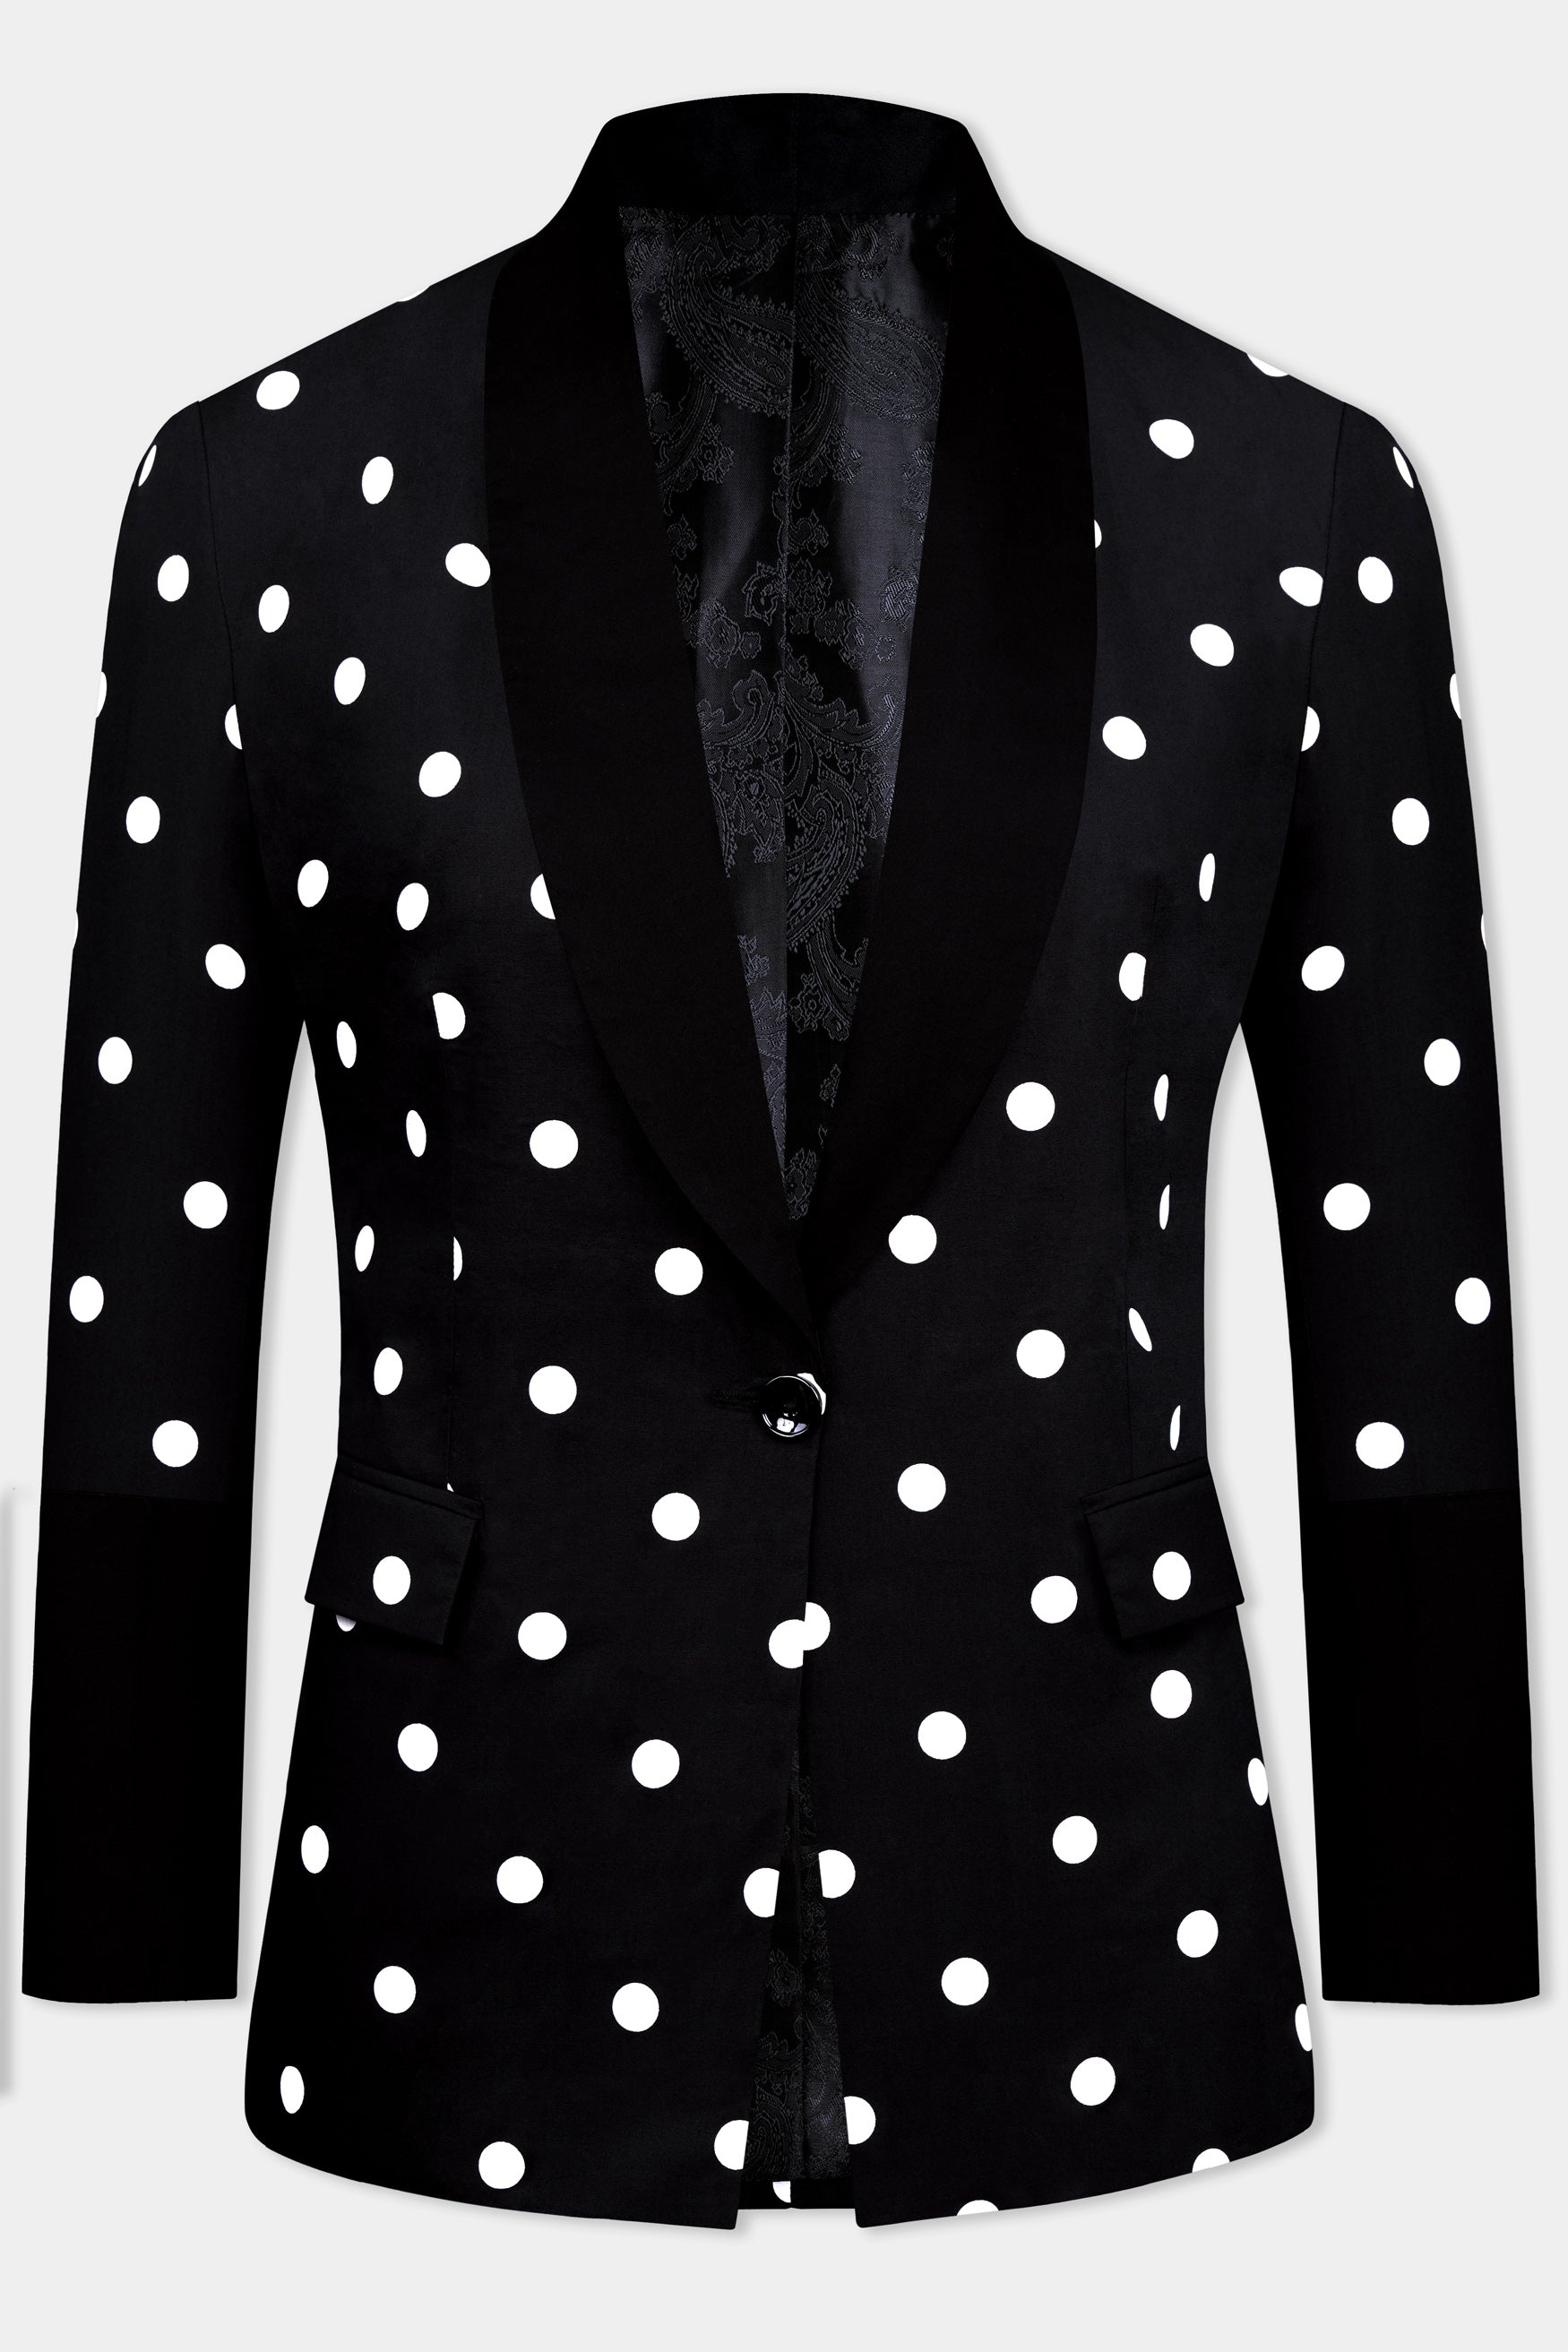 Jade Black and White Polka Dotted Premium Cotton Women’s Tuxedo Blazer